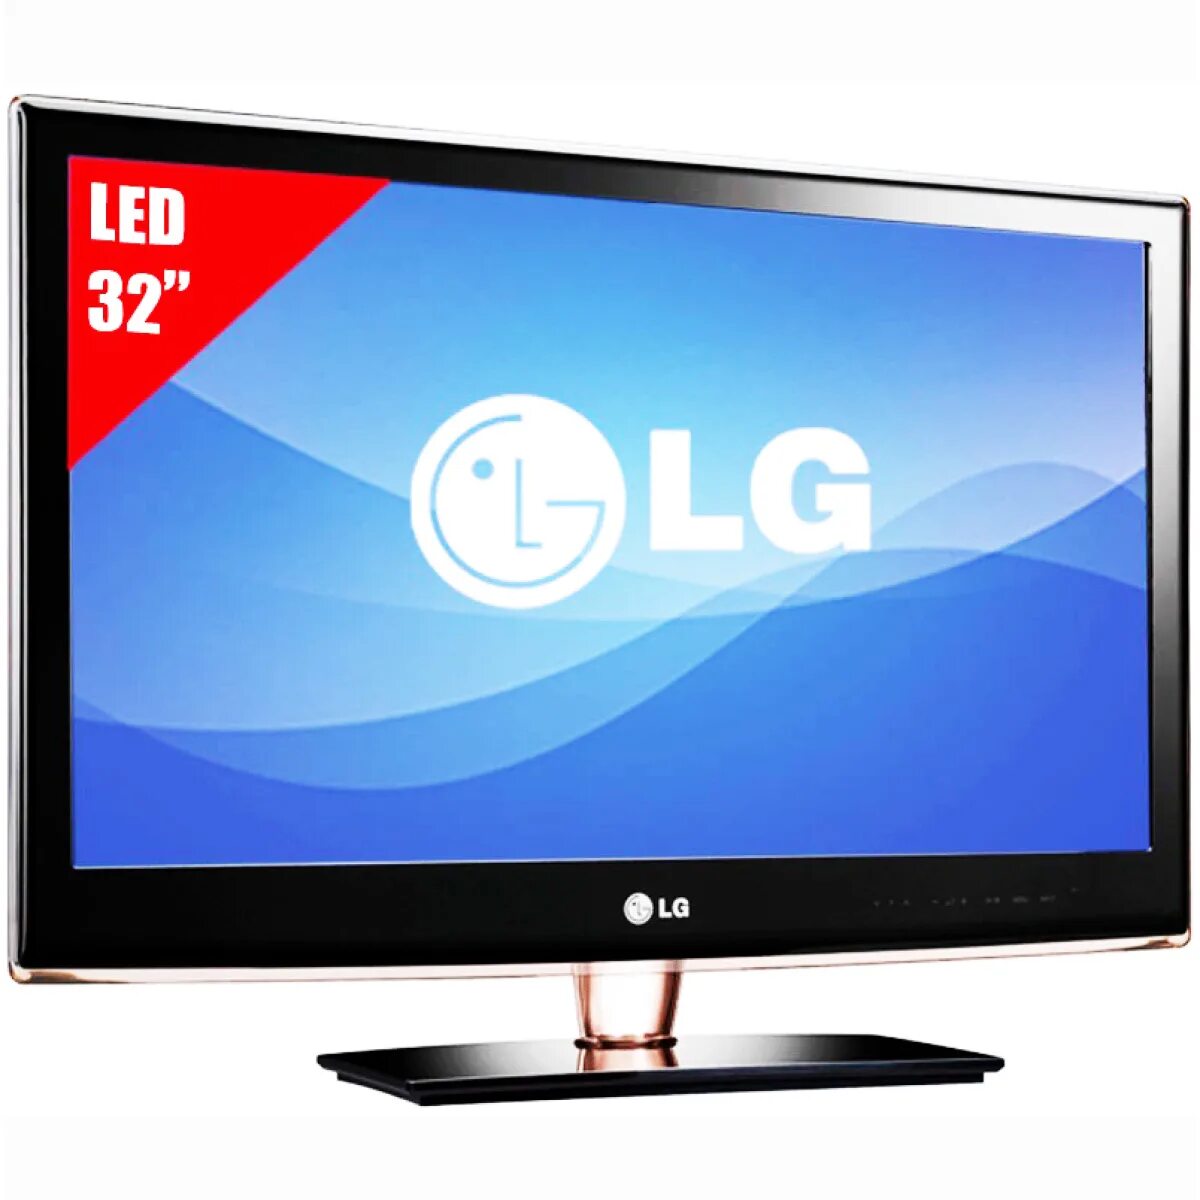 Купить lg в перми. LG led TV 32. LG led LCD 3d TV 32lb2. LG 32 led Television. ДНС телевизоры 32 дюйма Лджи.